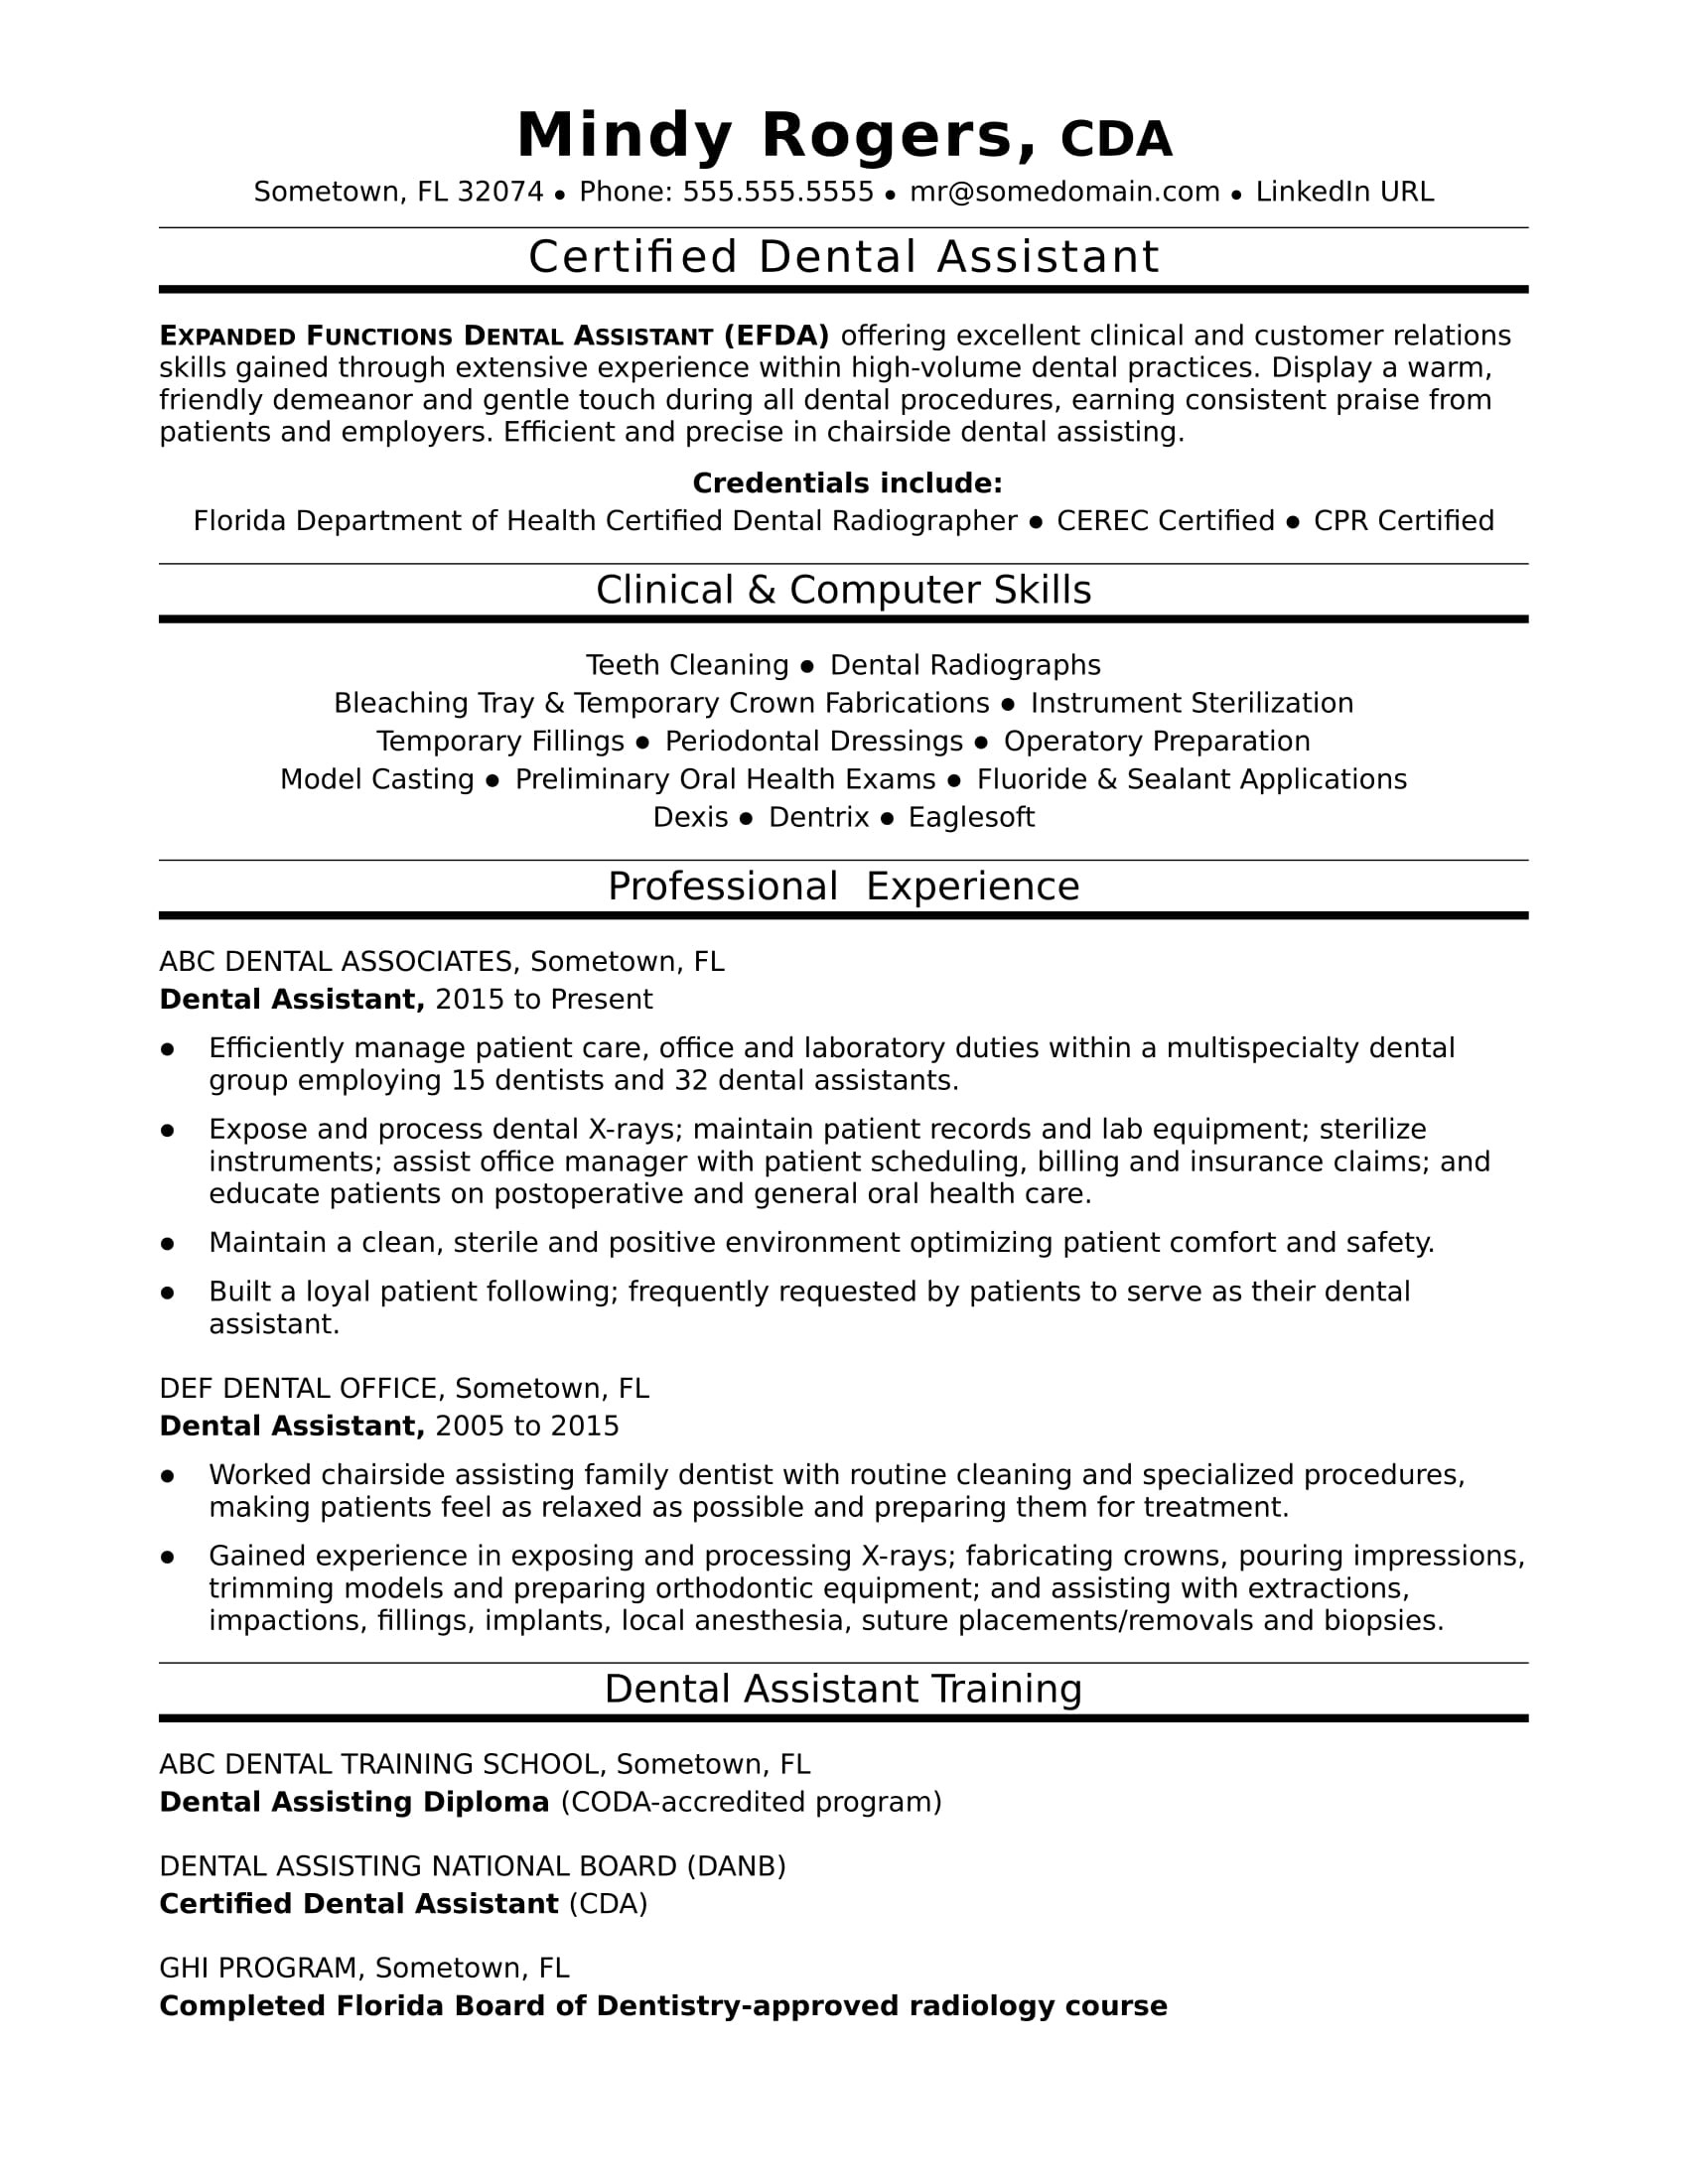 Sample Of Resume for Dental assistant Dental assistant Resume Sample Monster.com